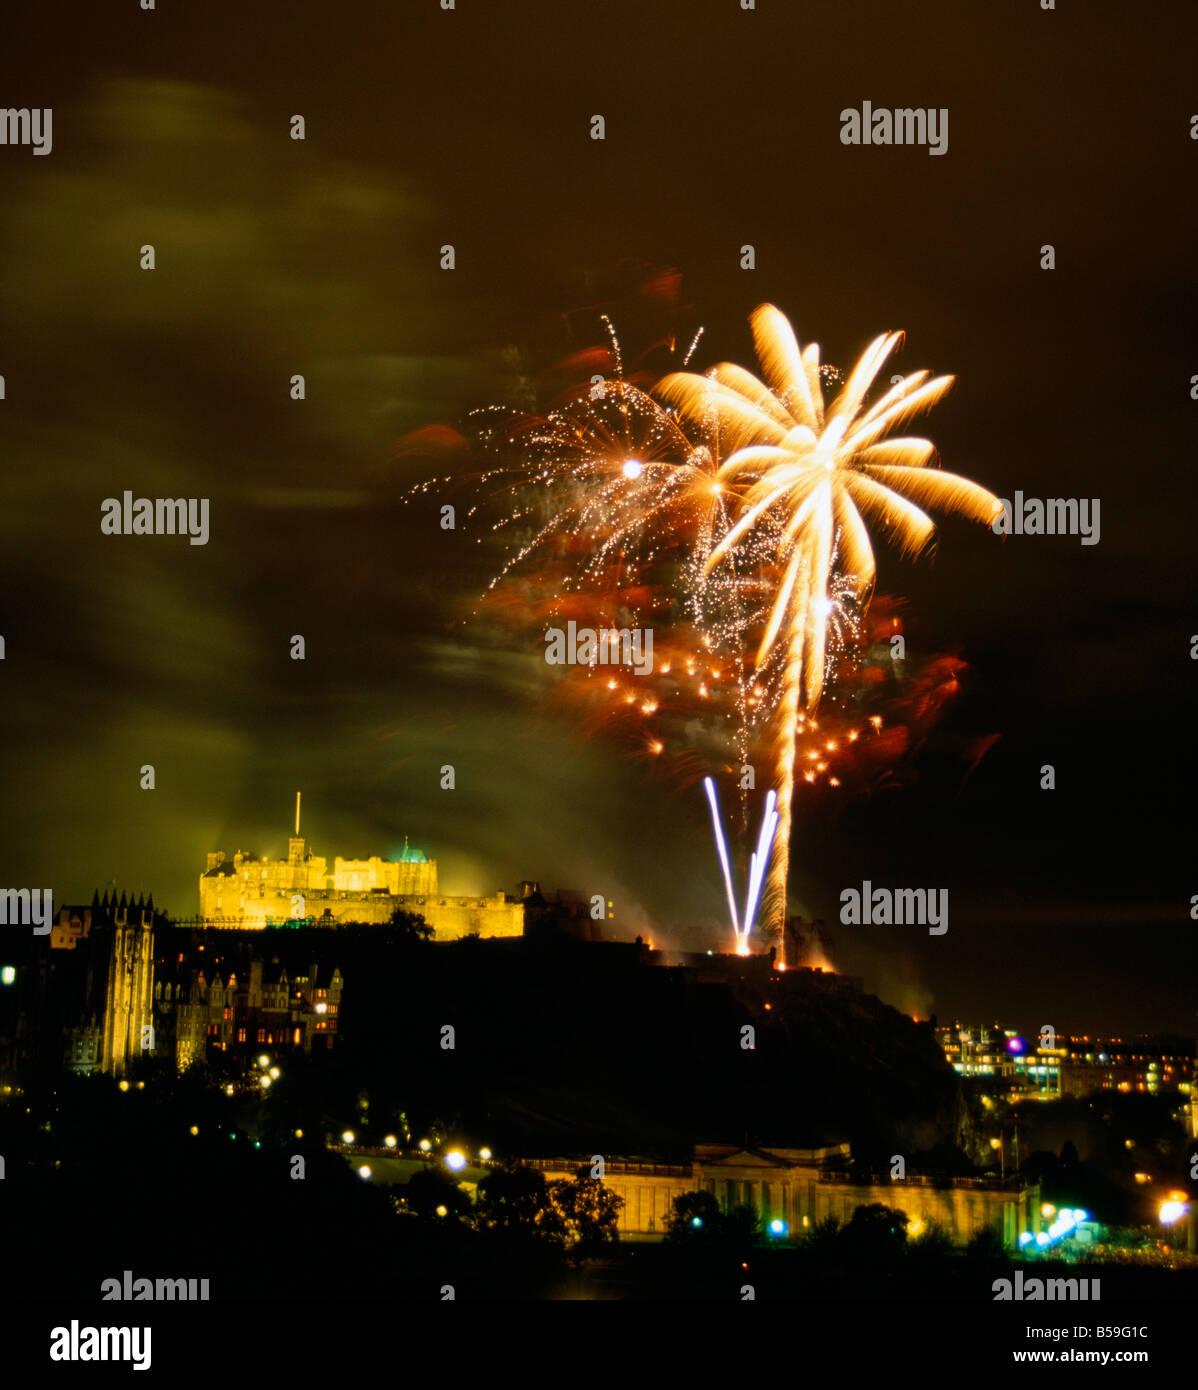 Efecto de una palmera en el castillo de fuegos artificiales en el castillo de Edimburgo, Escocia, visto desde el hotel Balmoral Foto de stock